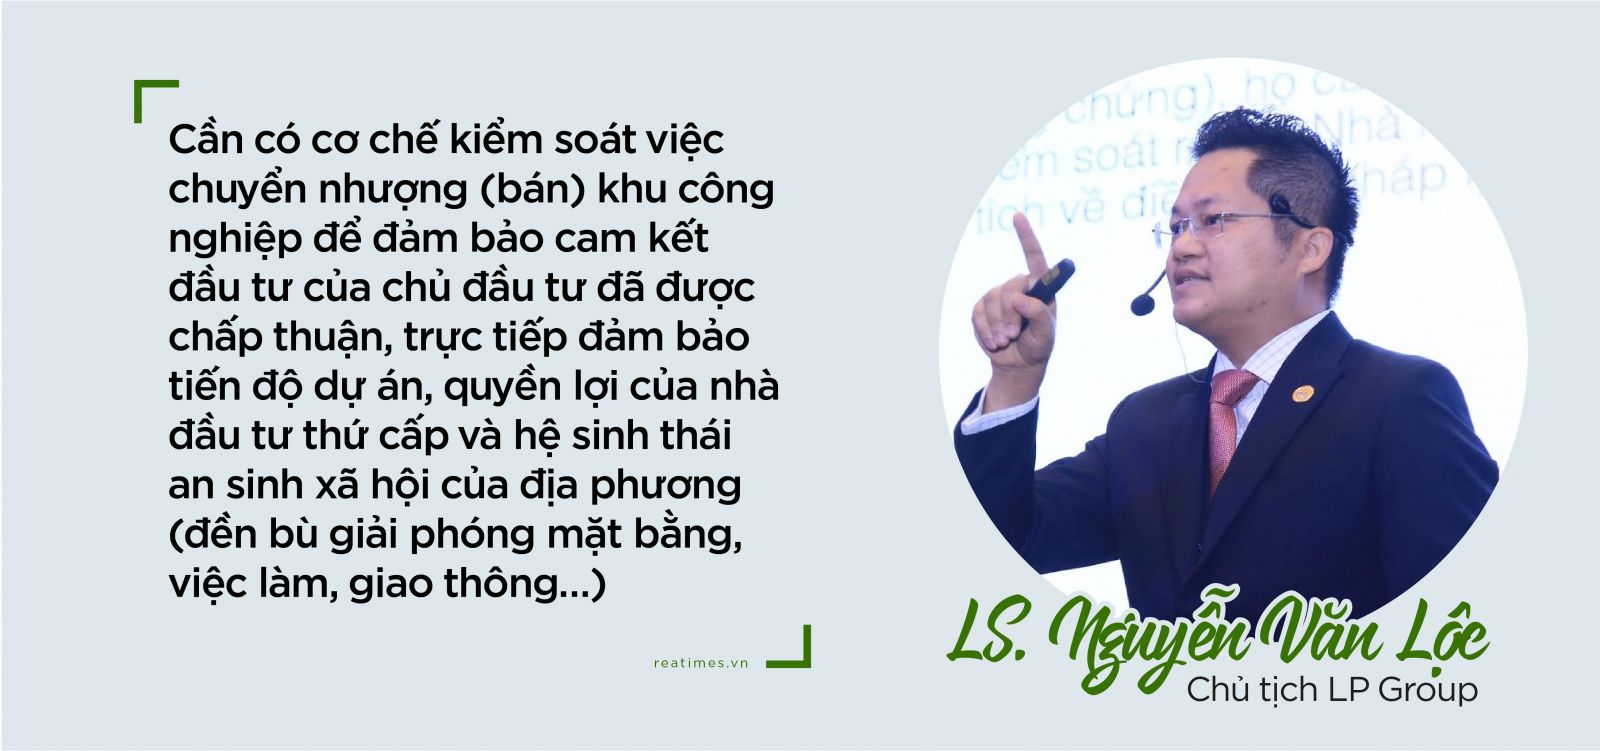 Luật sư Nguyễn Văn Lộc